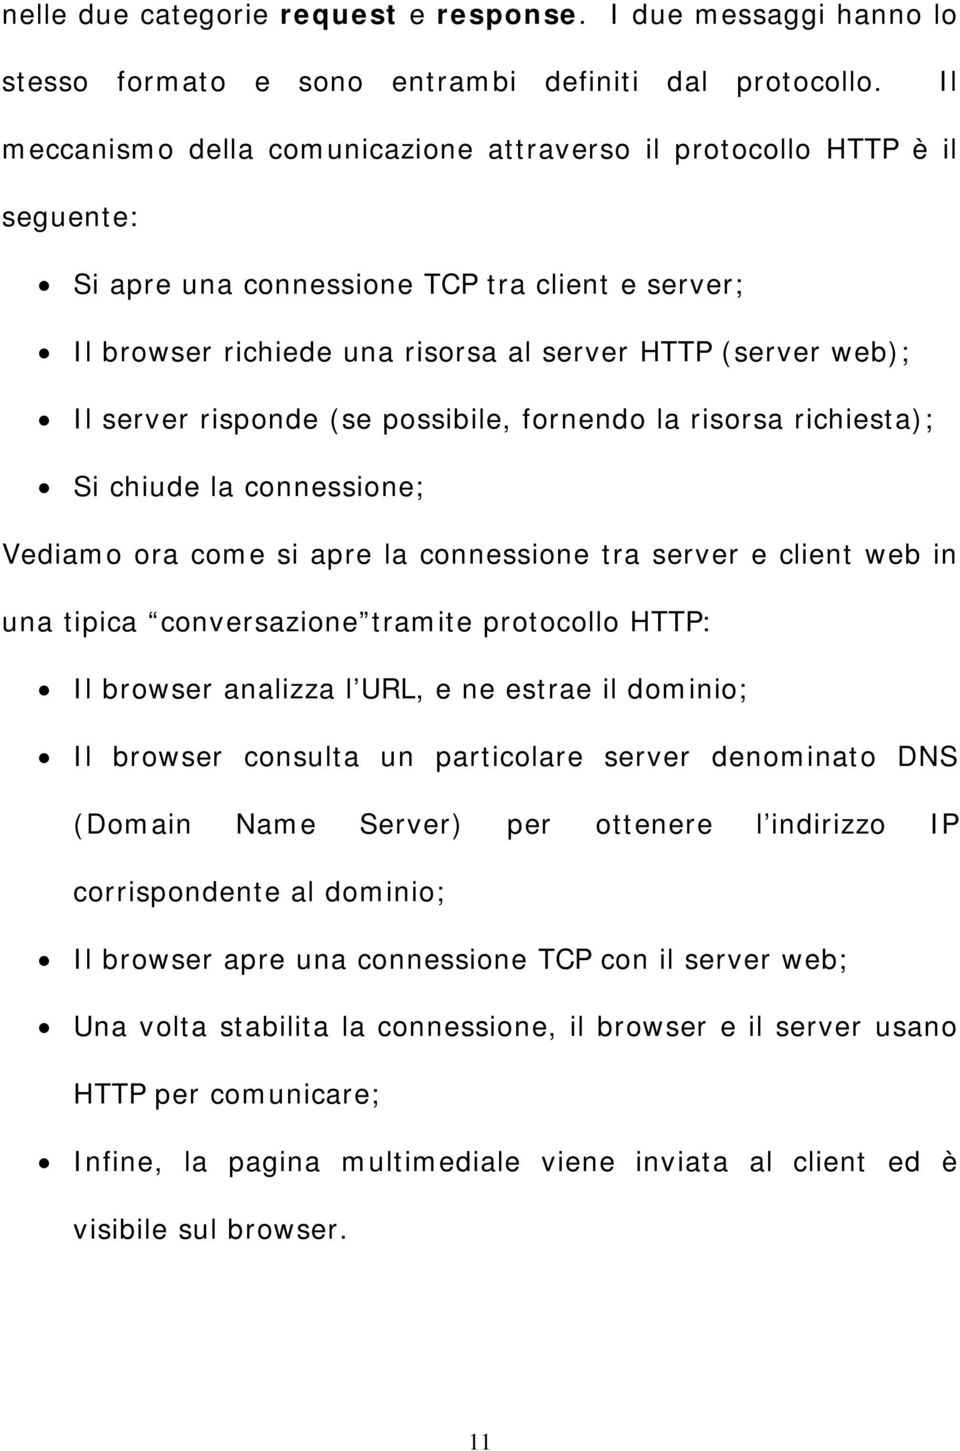 risponde (se possibile, fornendo la risorsa richiesta); Si chiude la connessione; Vediamo ora come si apre la connessione tra server e client web in una tipica conversazione tramite protocollo HTTP: